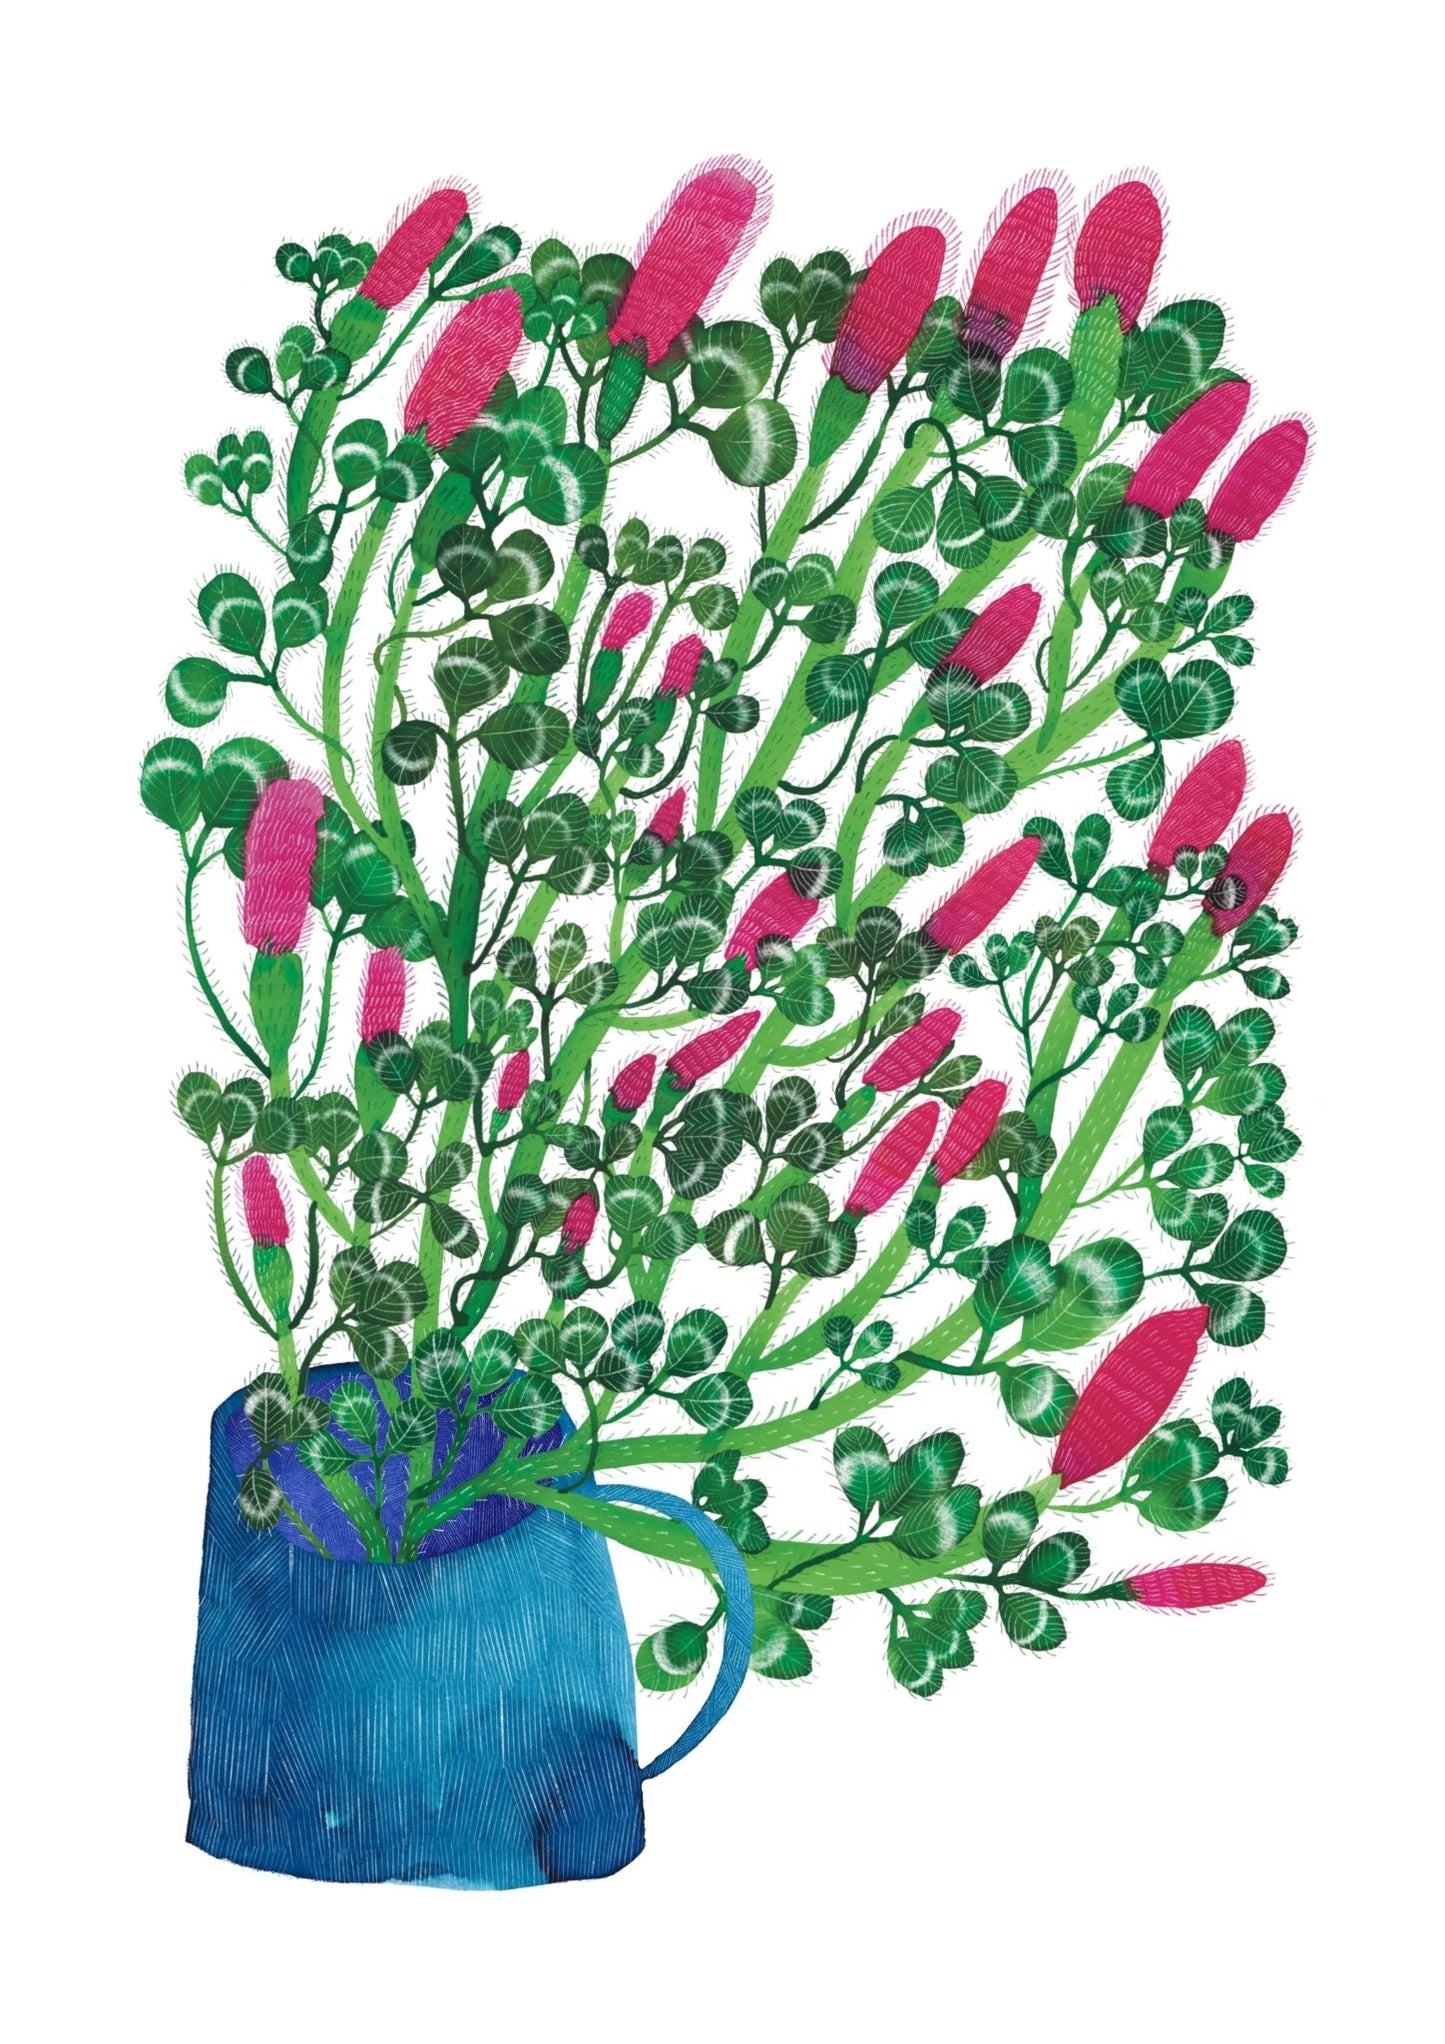 Cup of Crimson Clover Print - Rachel Emberton